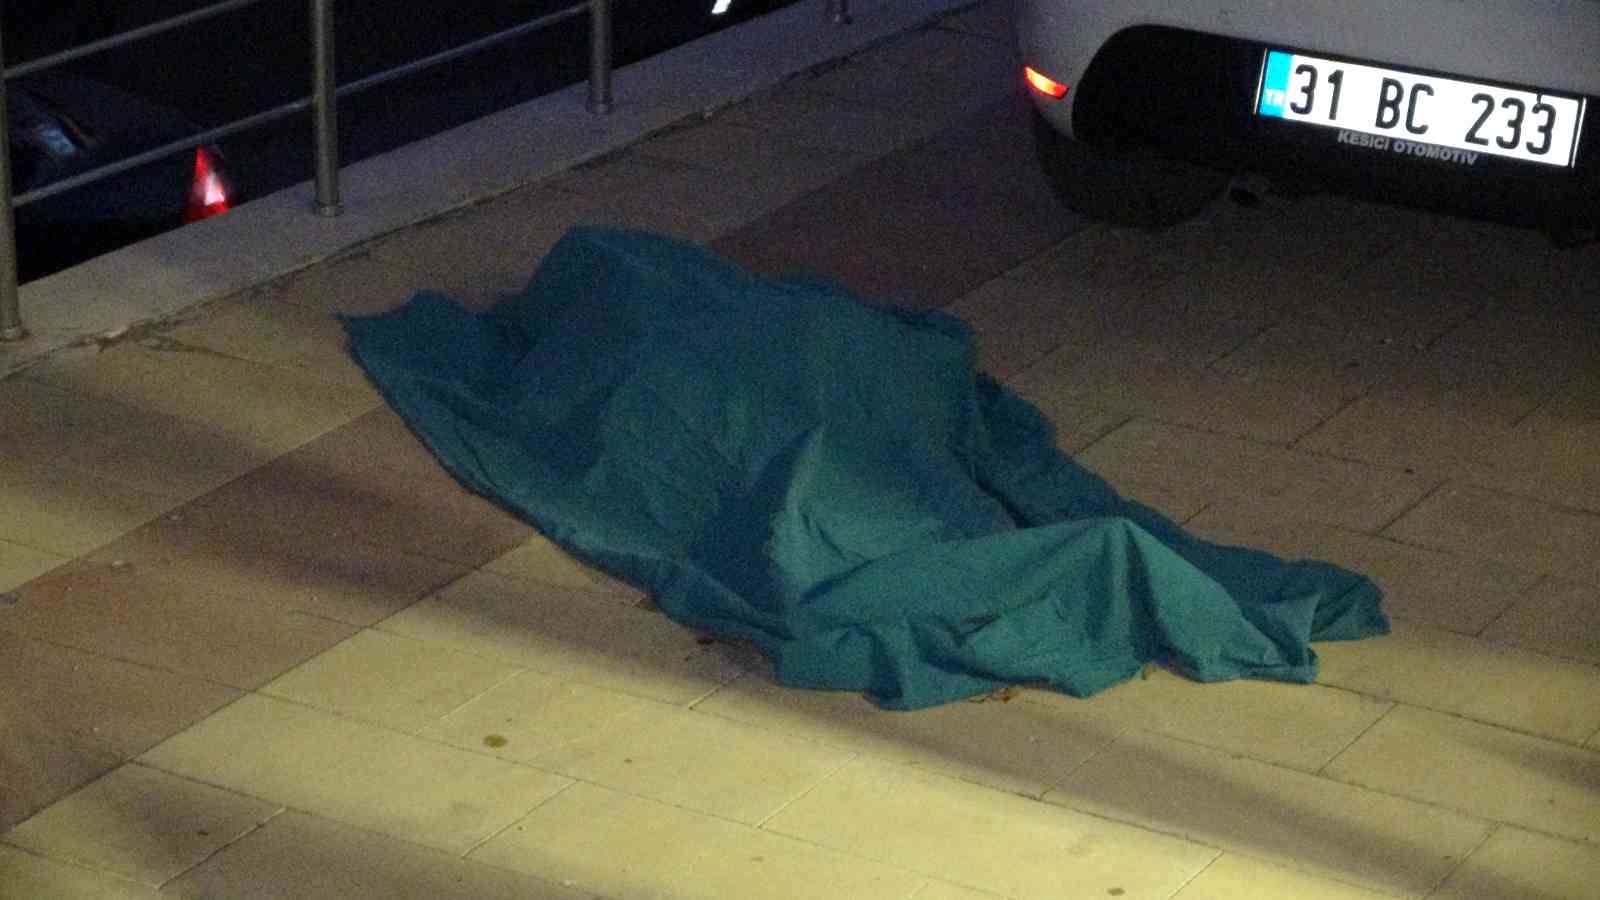 93 yaşındaki yaşlı kadın pencereden düşerek hayatını kaybetti #kahramanmaras